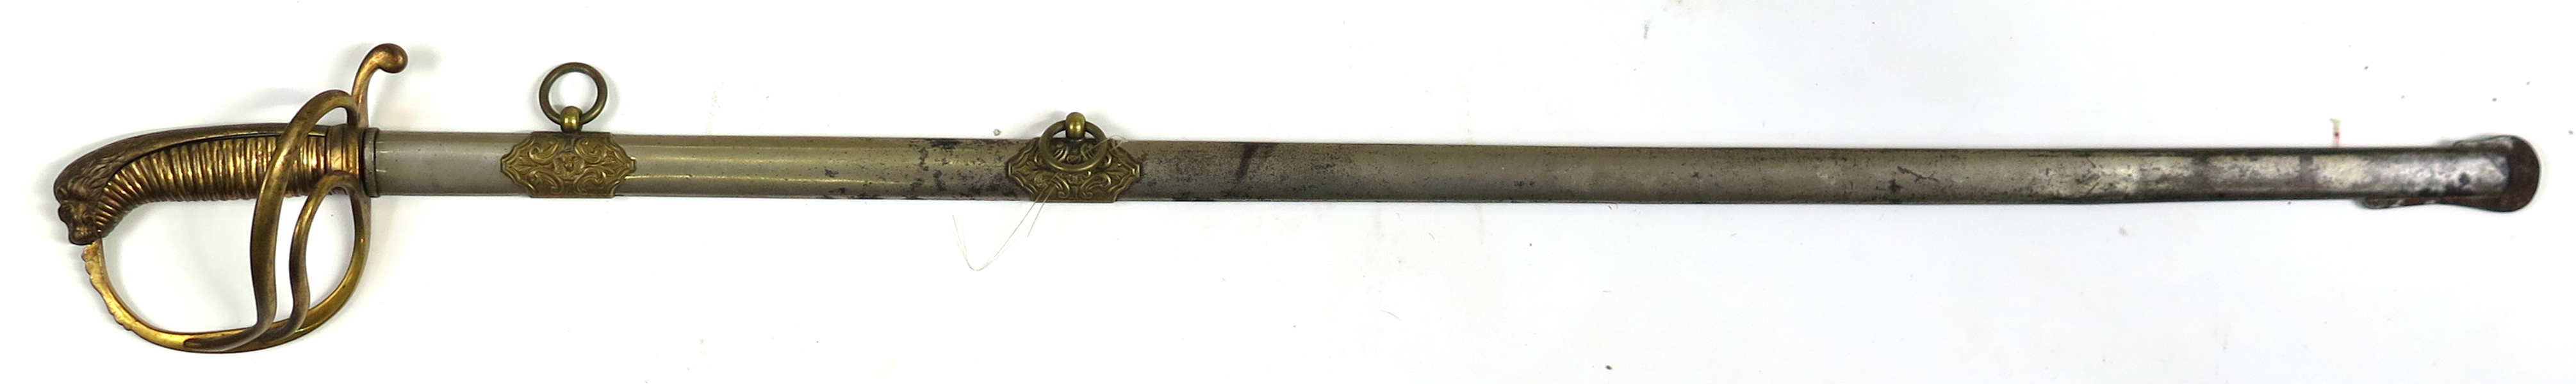 Sabel i balja, 1800-talets 2 hälft, så kallad tillåten modell för officer vid artilleriet, _23267a_8dab29902c60871_lg.jpeg